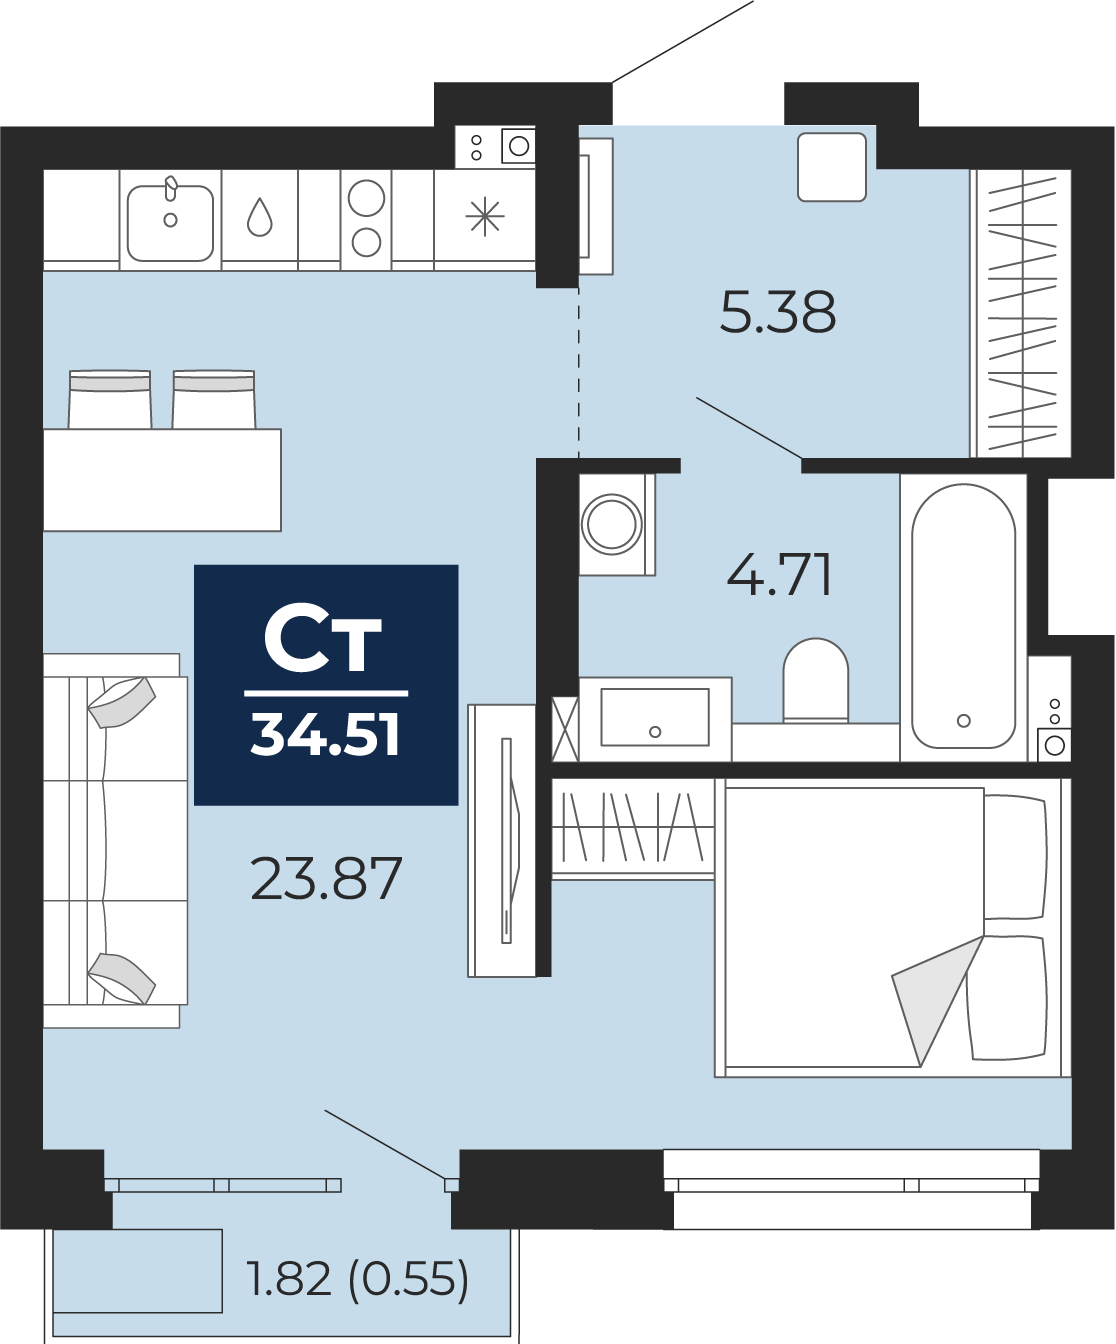 Квартира № 397, Студия, 34.51 кв. м, 13 этаж